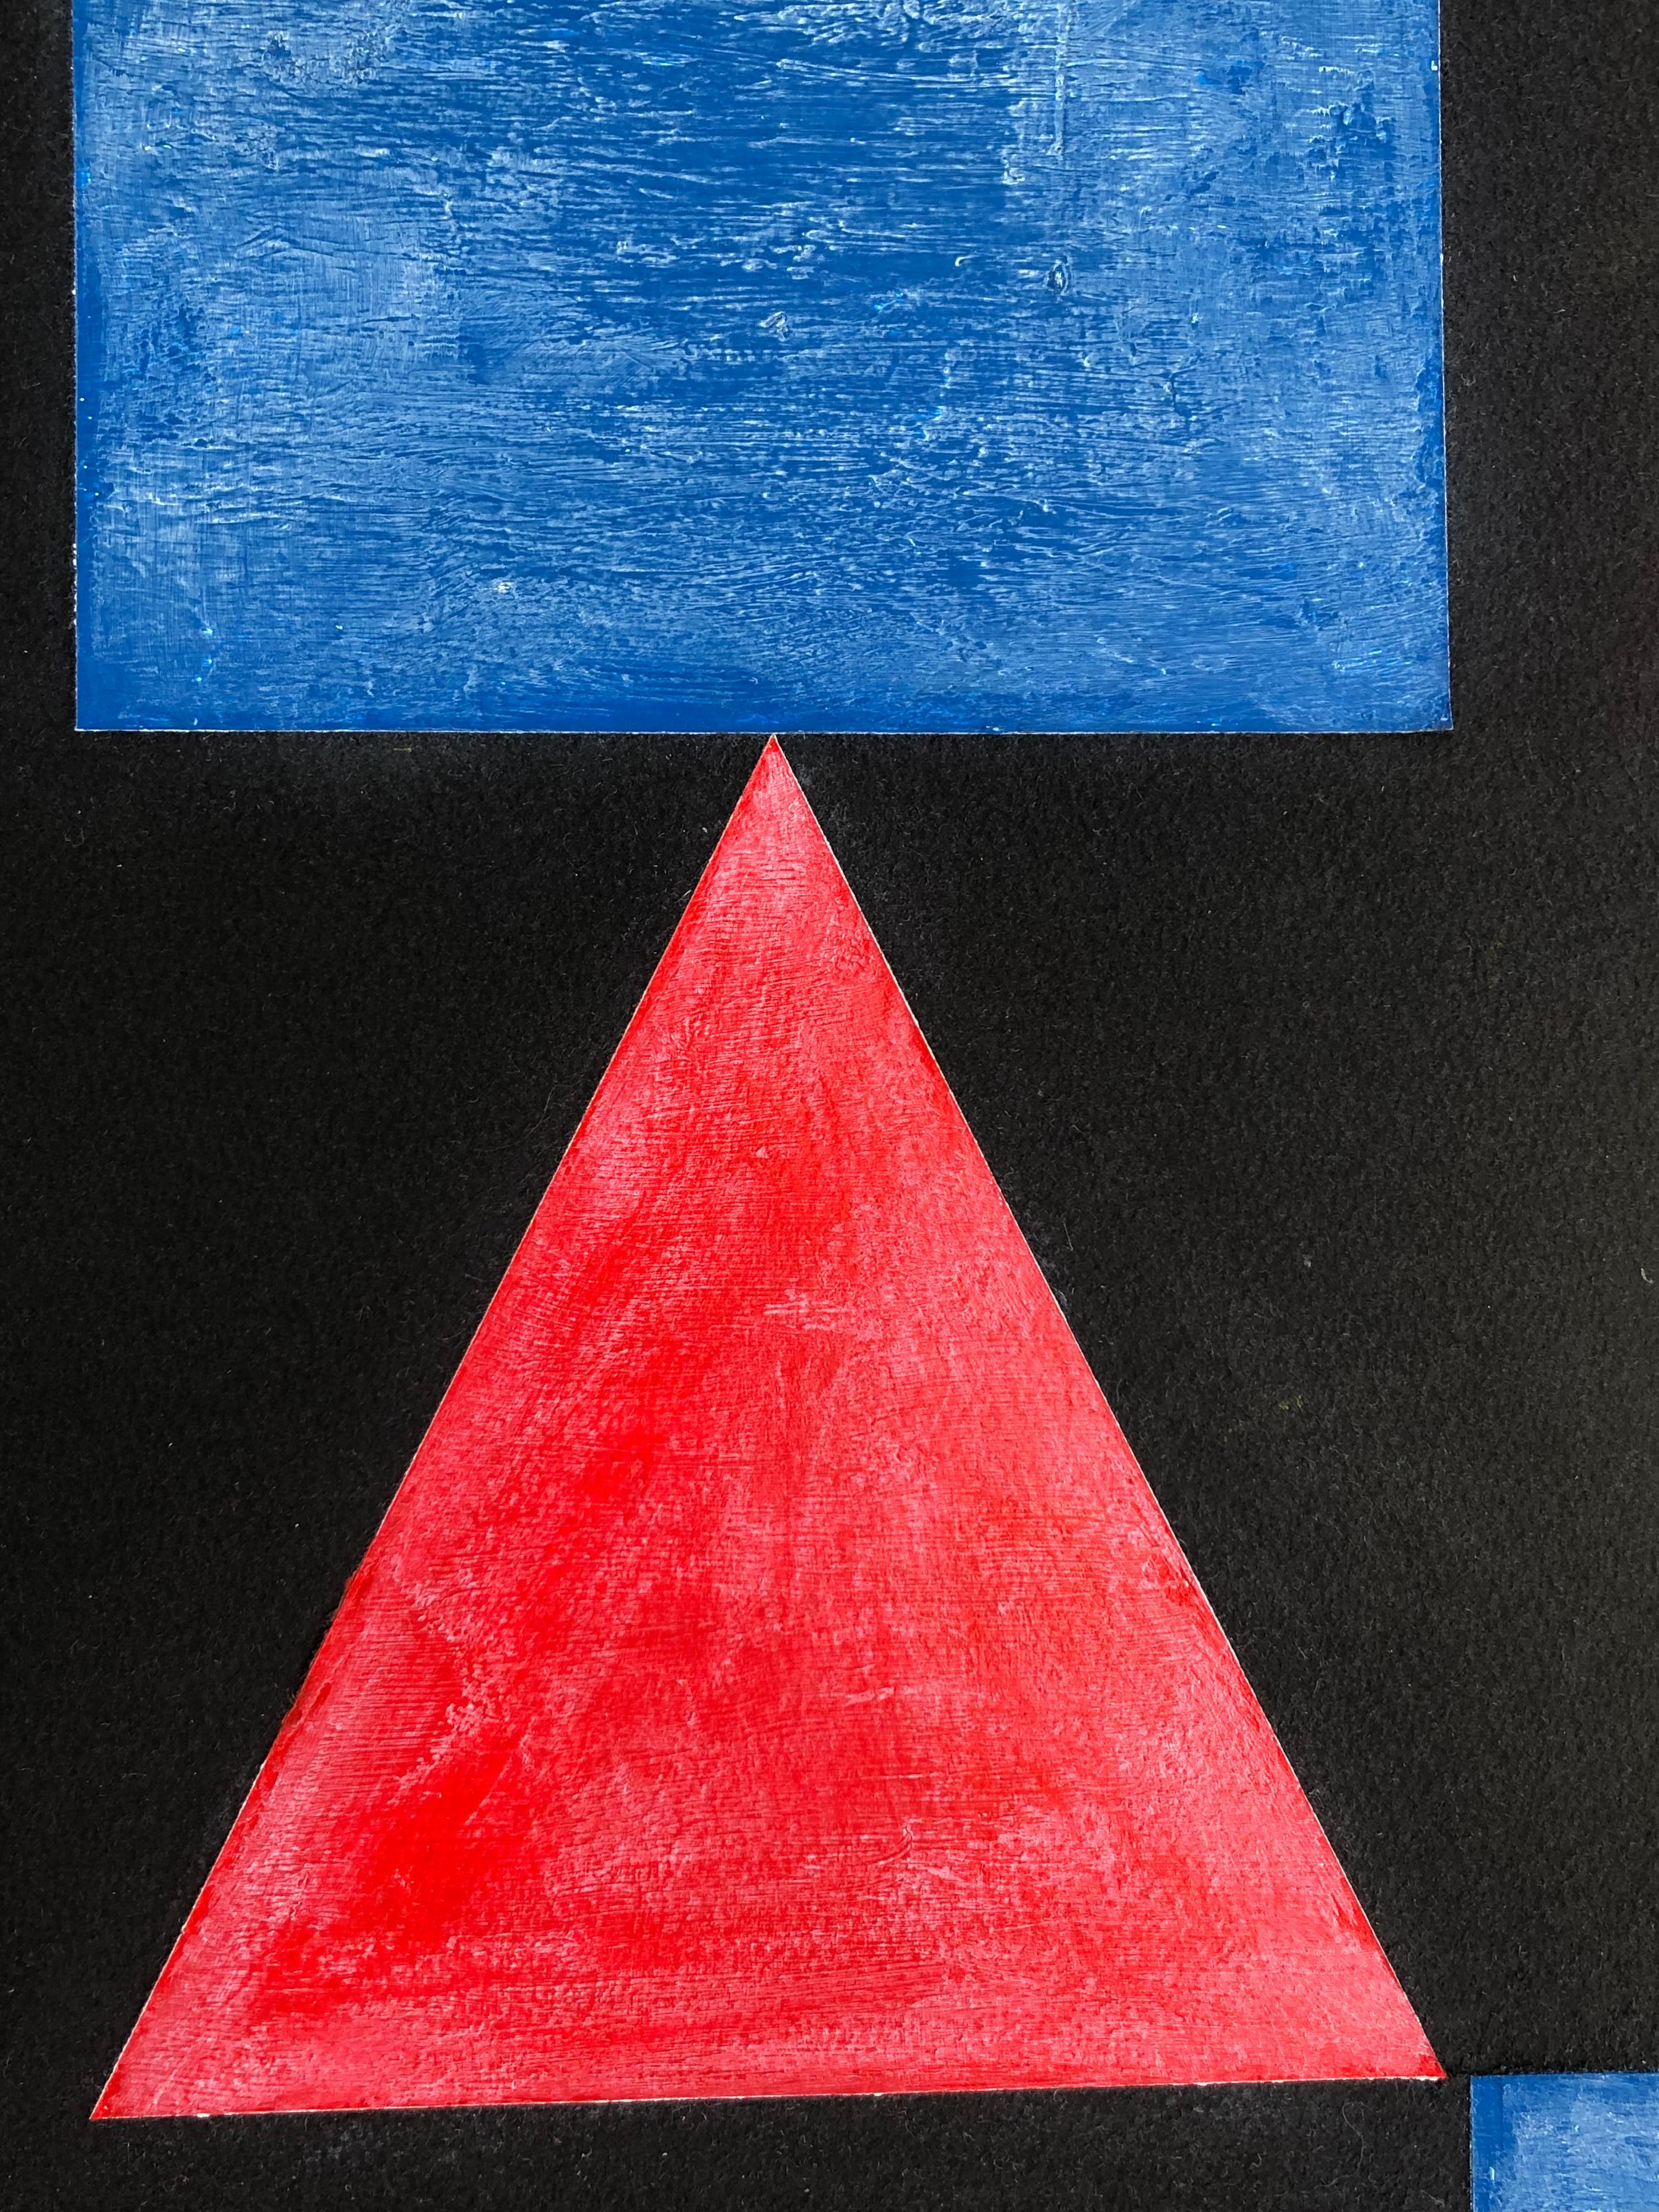 Combinaison d'huile et d'acrylique sur papier. Du Bauhaus mais artiste inconnu, c.1950s. Encadré
Les dimensions sans le cadre sont 30